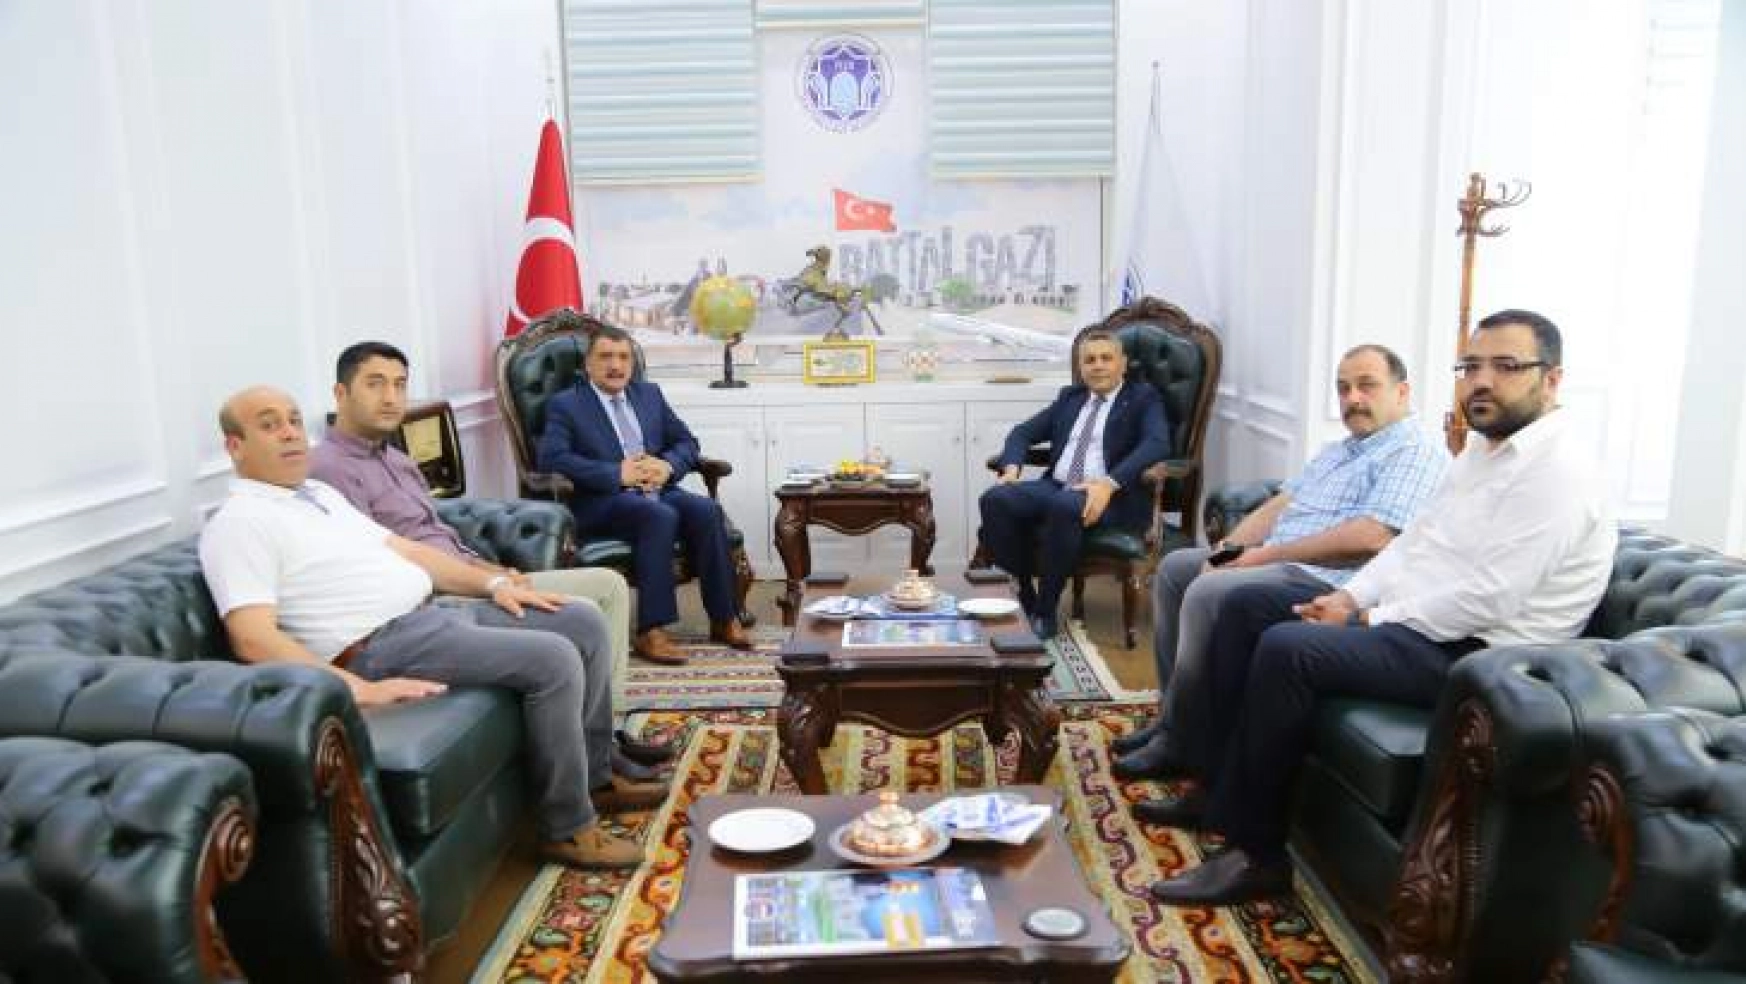 Sadıkoğlu, 'Başkanımızın Hizmetlerinin Malatya'da Ciddi Anlamı ve Değeri Var'